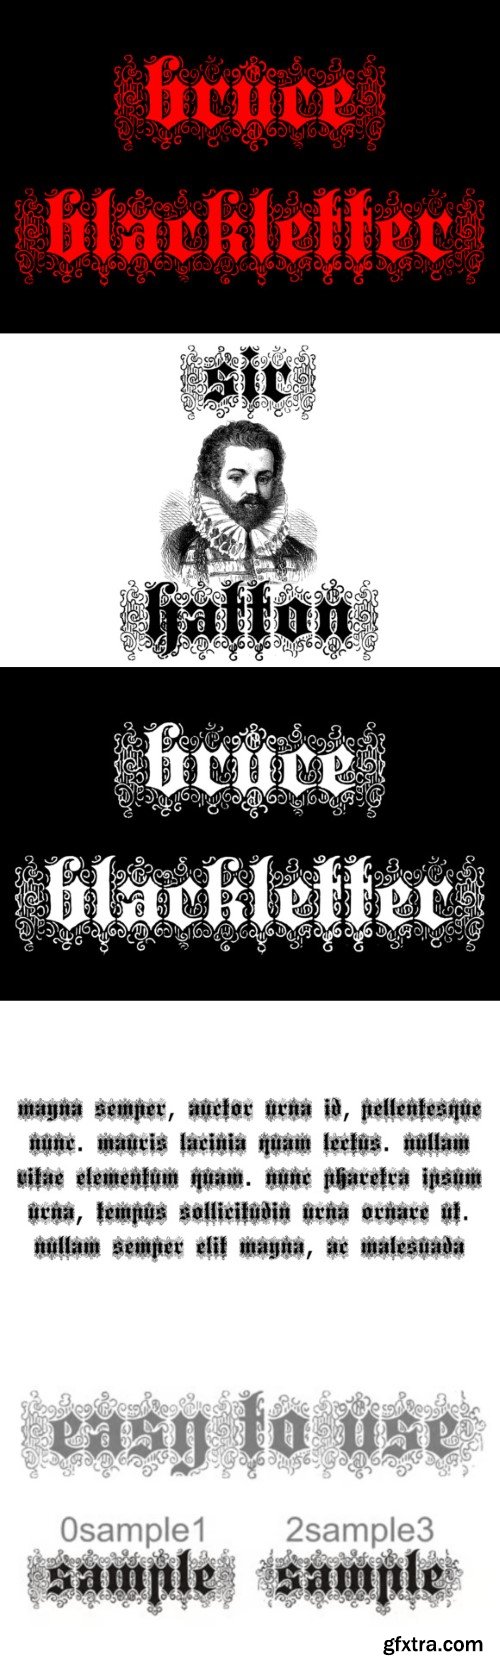 Bruce Blackletter Font